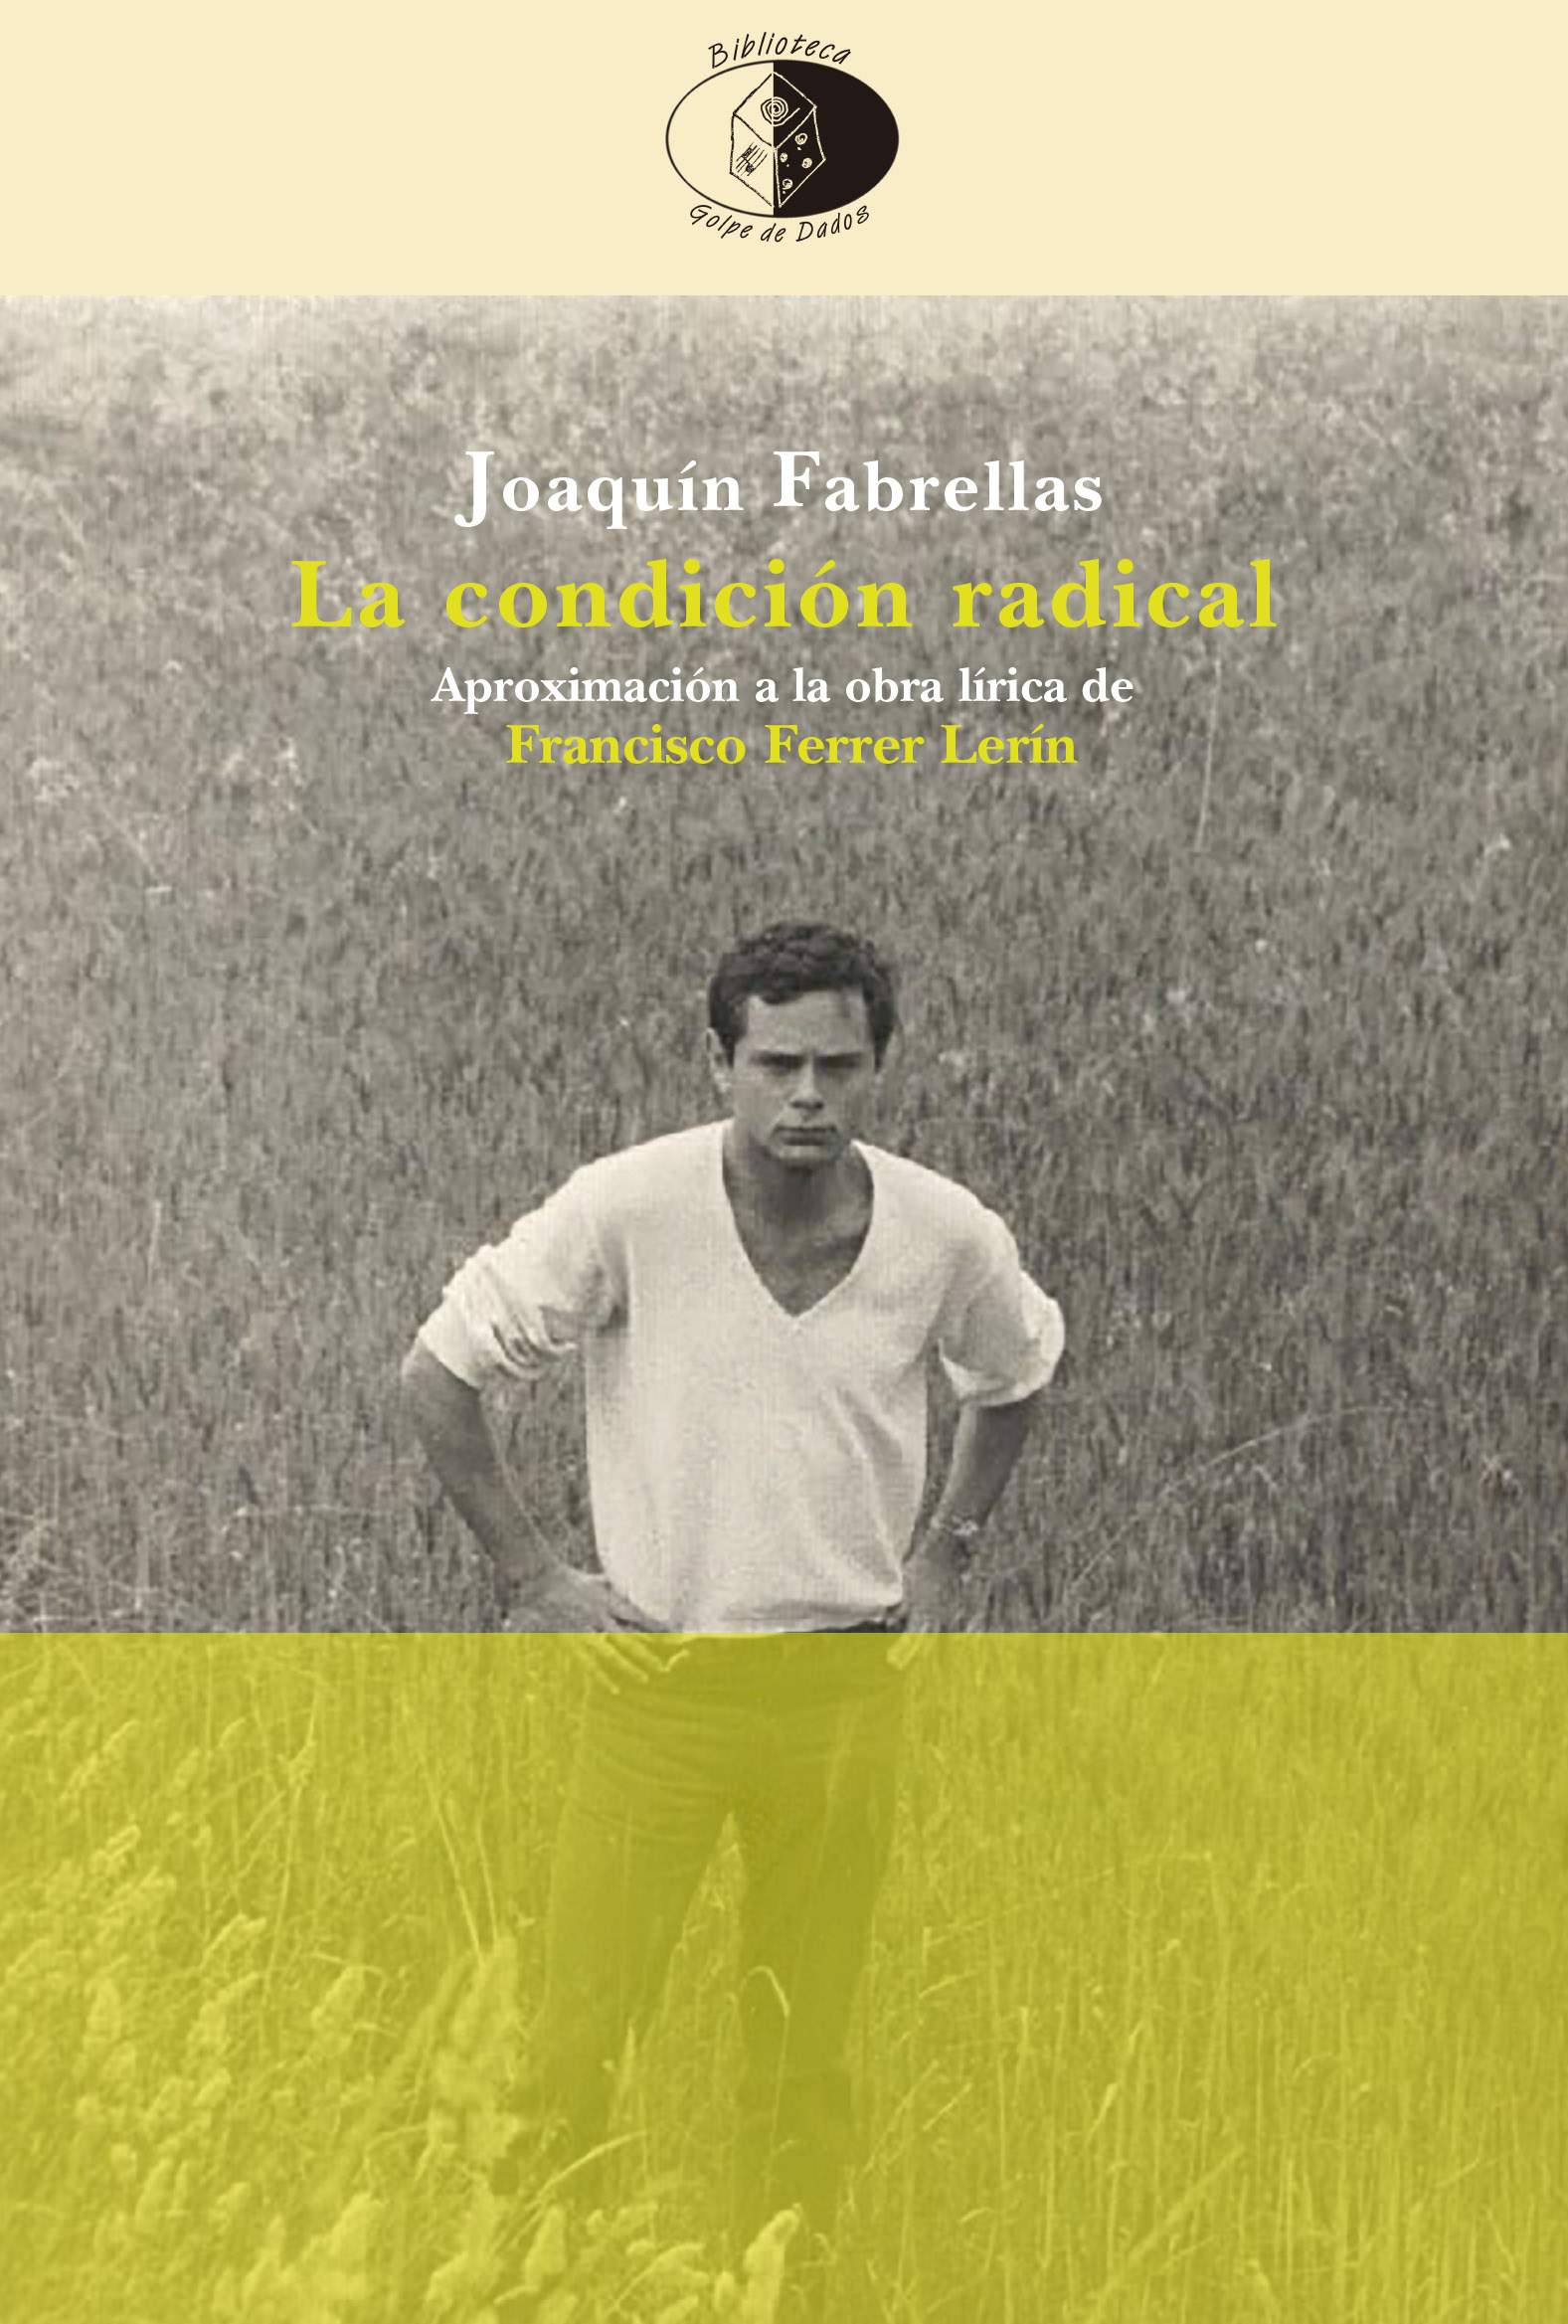 Ana Rosa Martínez escribe sobre La condición radical de Joaquín Fabrellas para Vallejo & Co